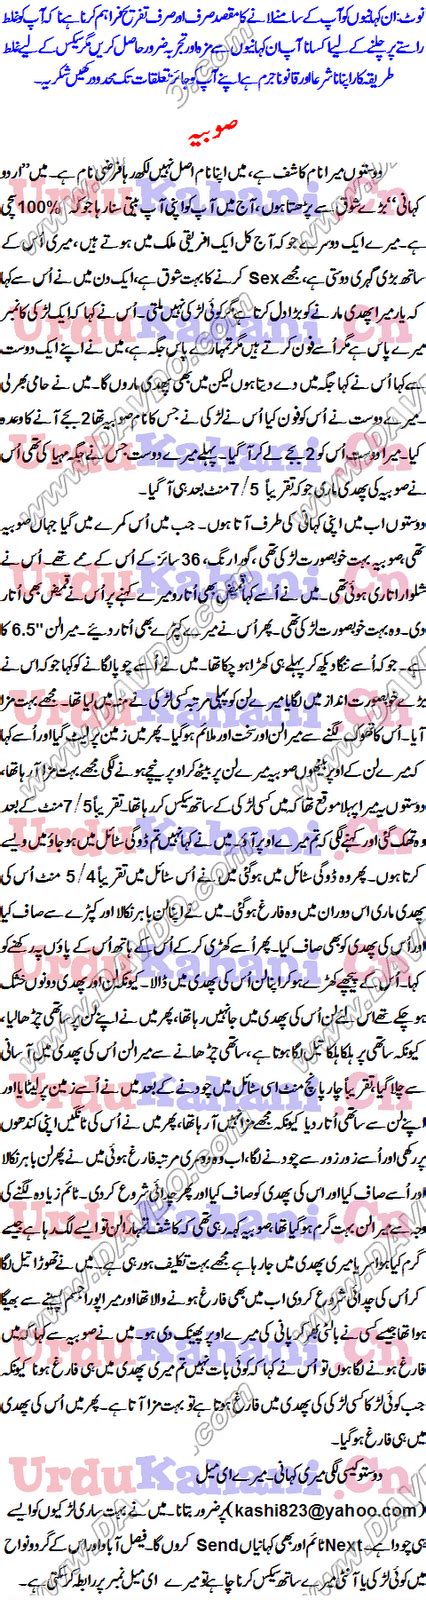 Real Sex Stories In Urdu August 2010